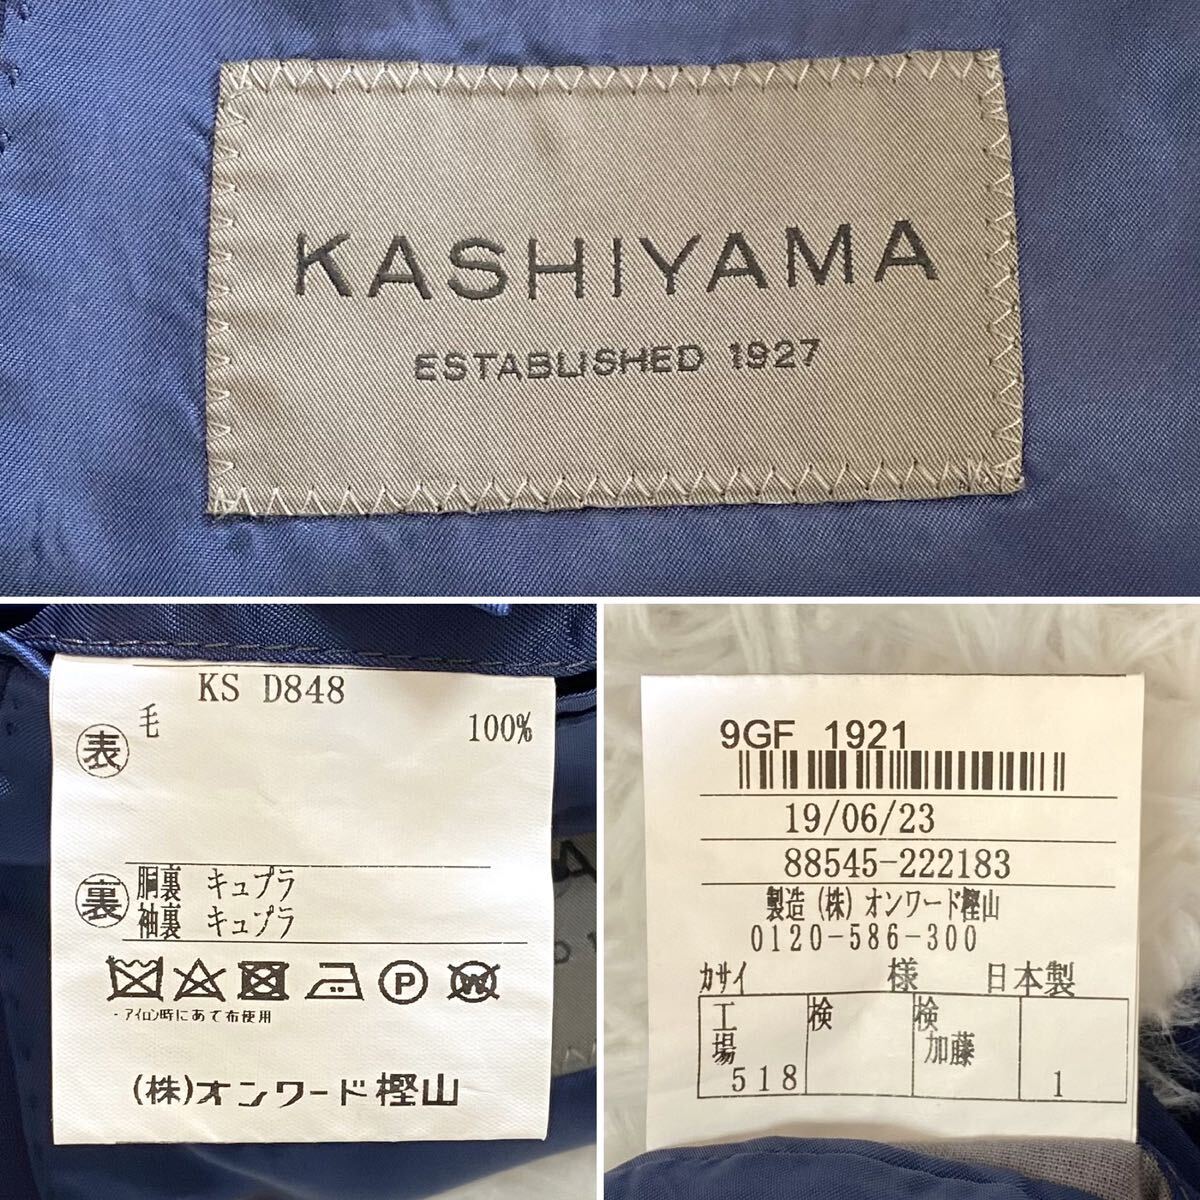 美品『KASHIYAMA』フルオーダーメイドスーツ セットアップ 2パンツ ネイビー Sサイズ ウール素材 日本製 パンツ2本セット オンワード樫山_画像10